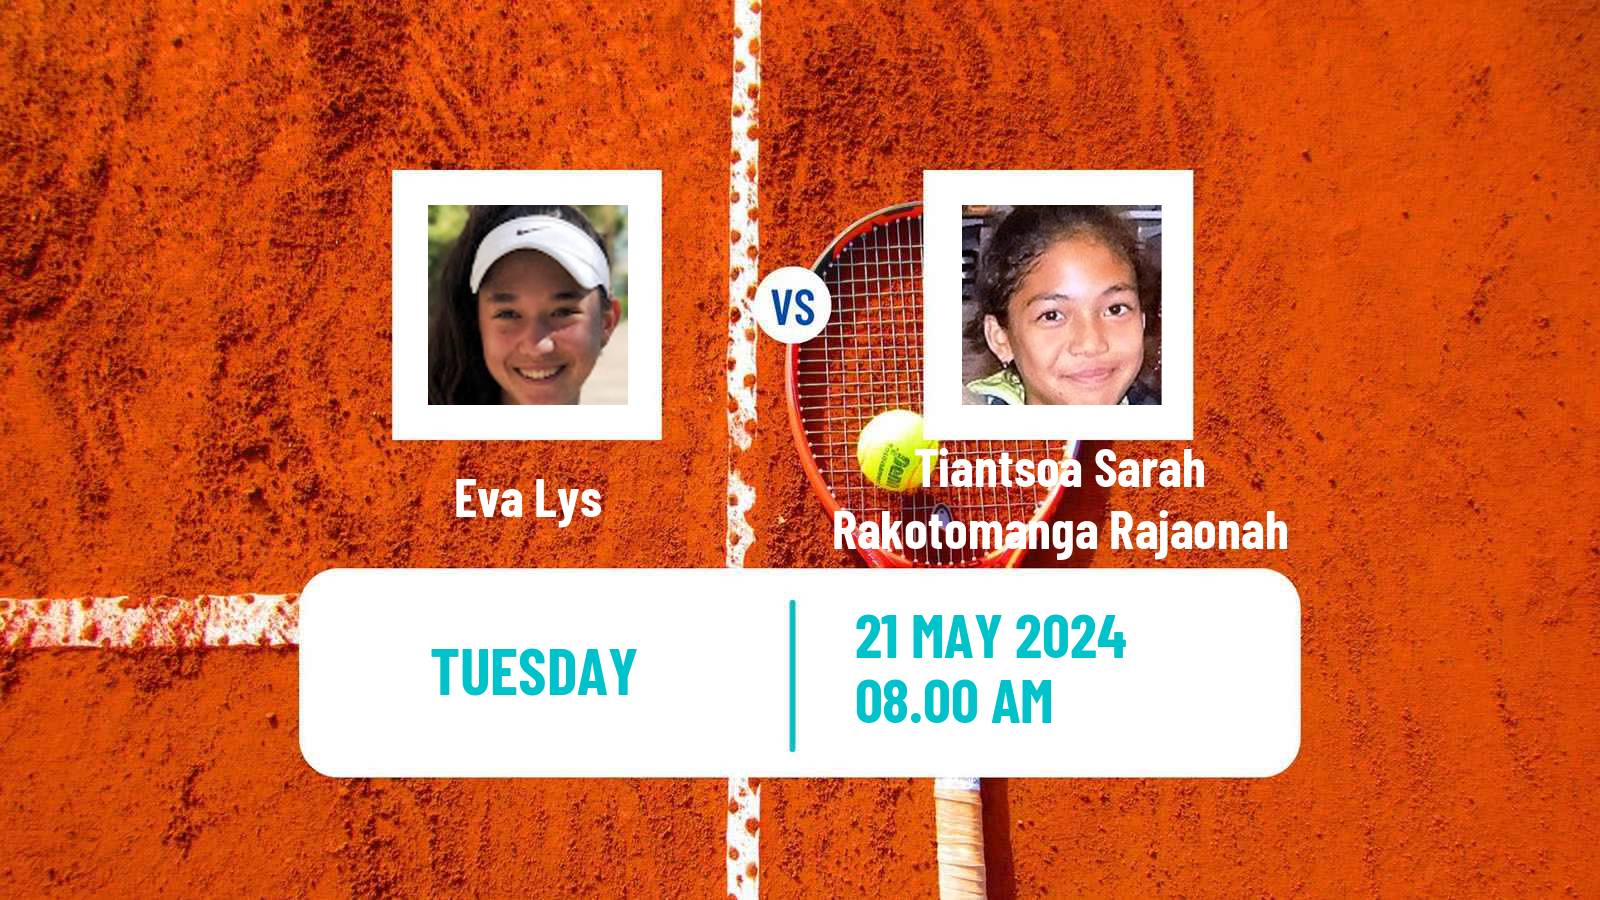 Tennis WTA Roland Garros Eva Lys - Tiantsoa Sarah Rakotomanga Rajaonah